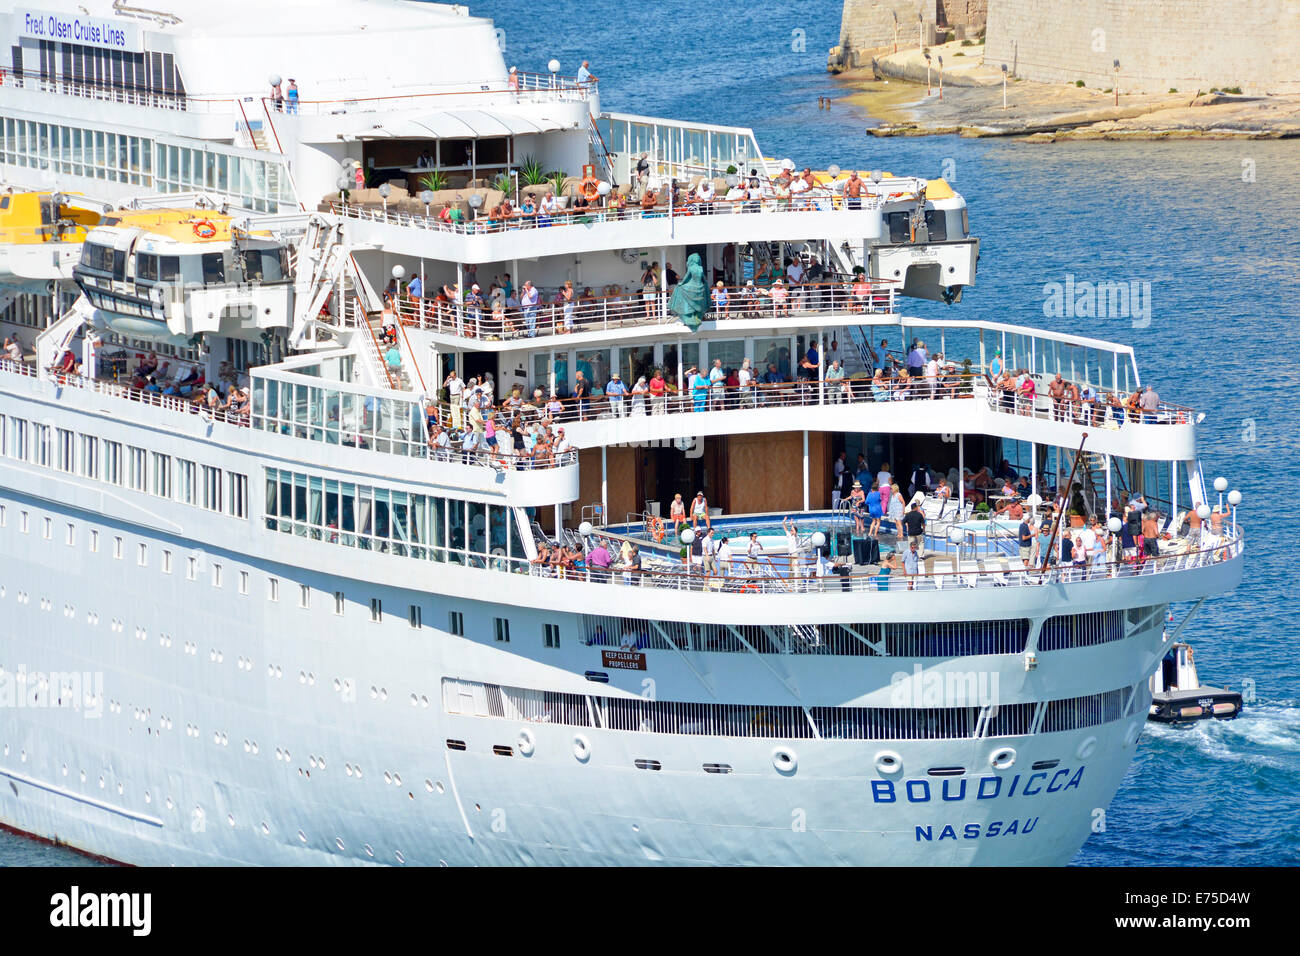 Les passagers se sont rassemblés sur le pont arrière du bateau de croisière d'Boudicca Grand Harbour La Valette Malte sur une croisière Méditerranéenne Banque D'Images